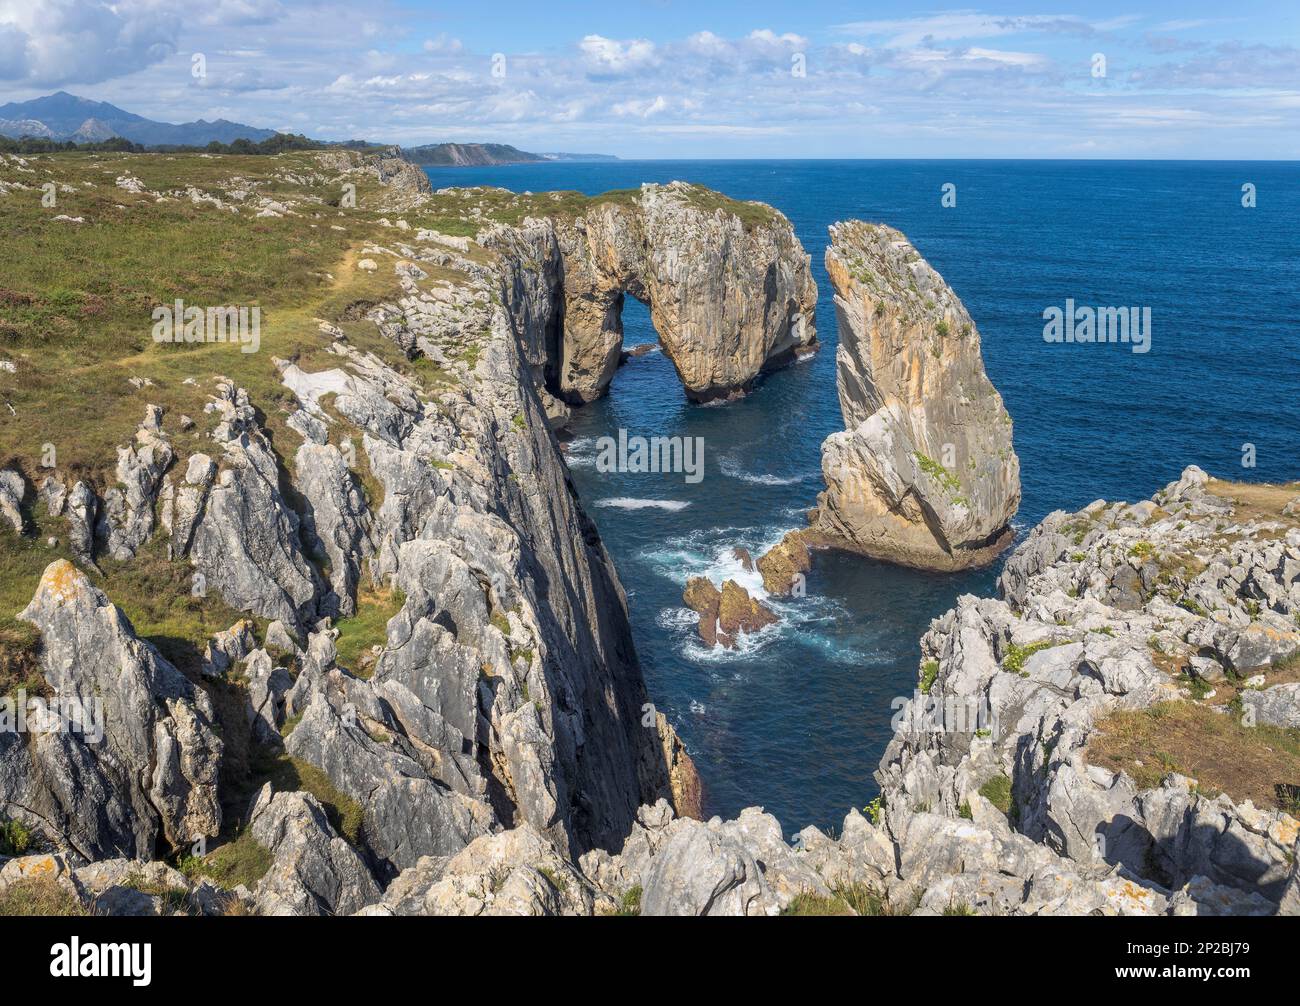 Una tranquilla scena delle scogliere dell'Inferno nelle Asturie, la Spagna rivela una spettacolare costa rocciosa che si estende dal mare ad una formazione rocciosa impressionante circondata b Foto Stock